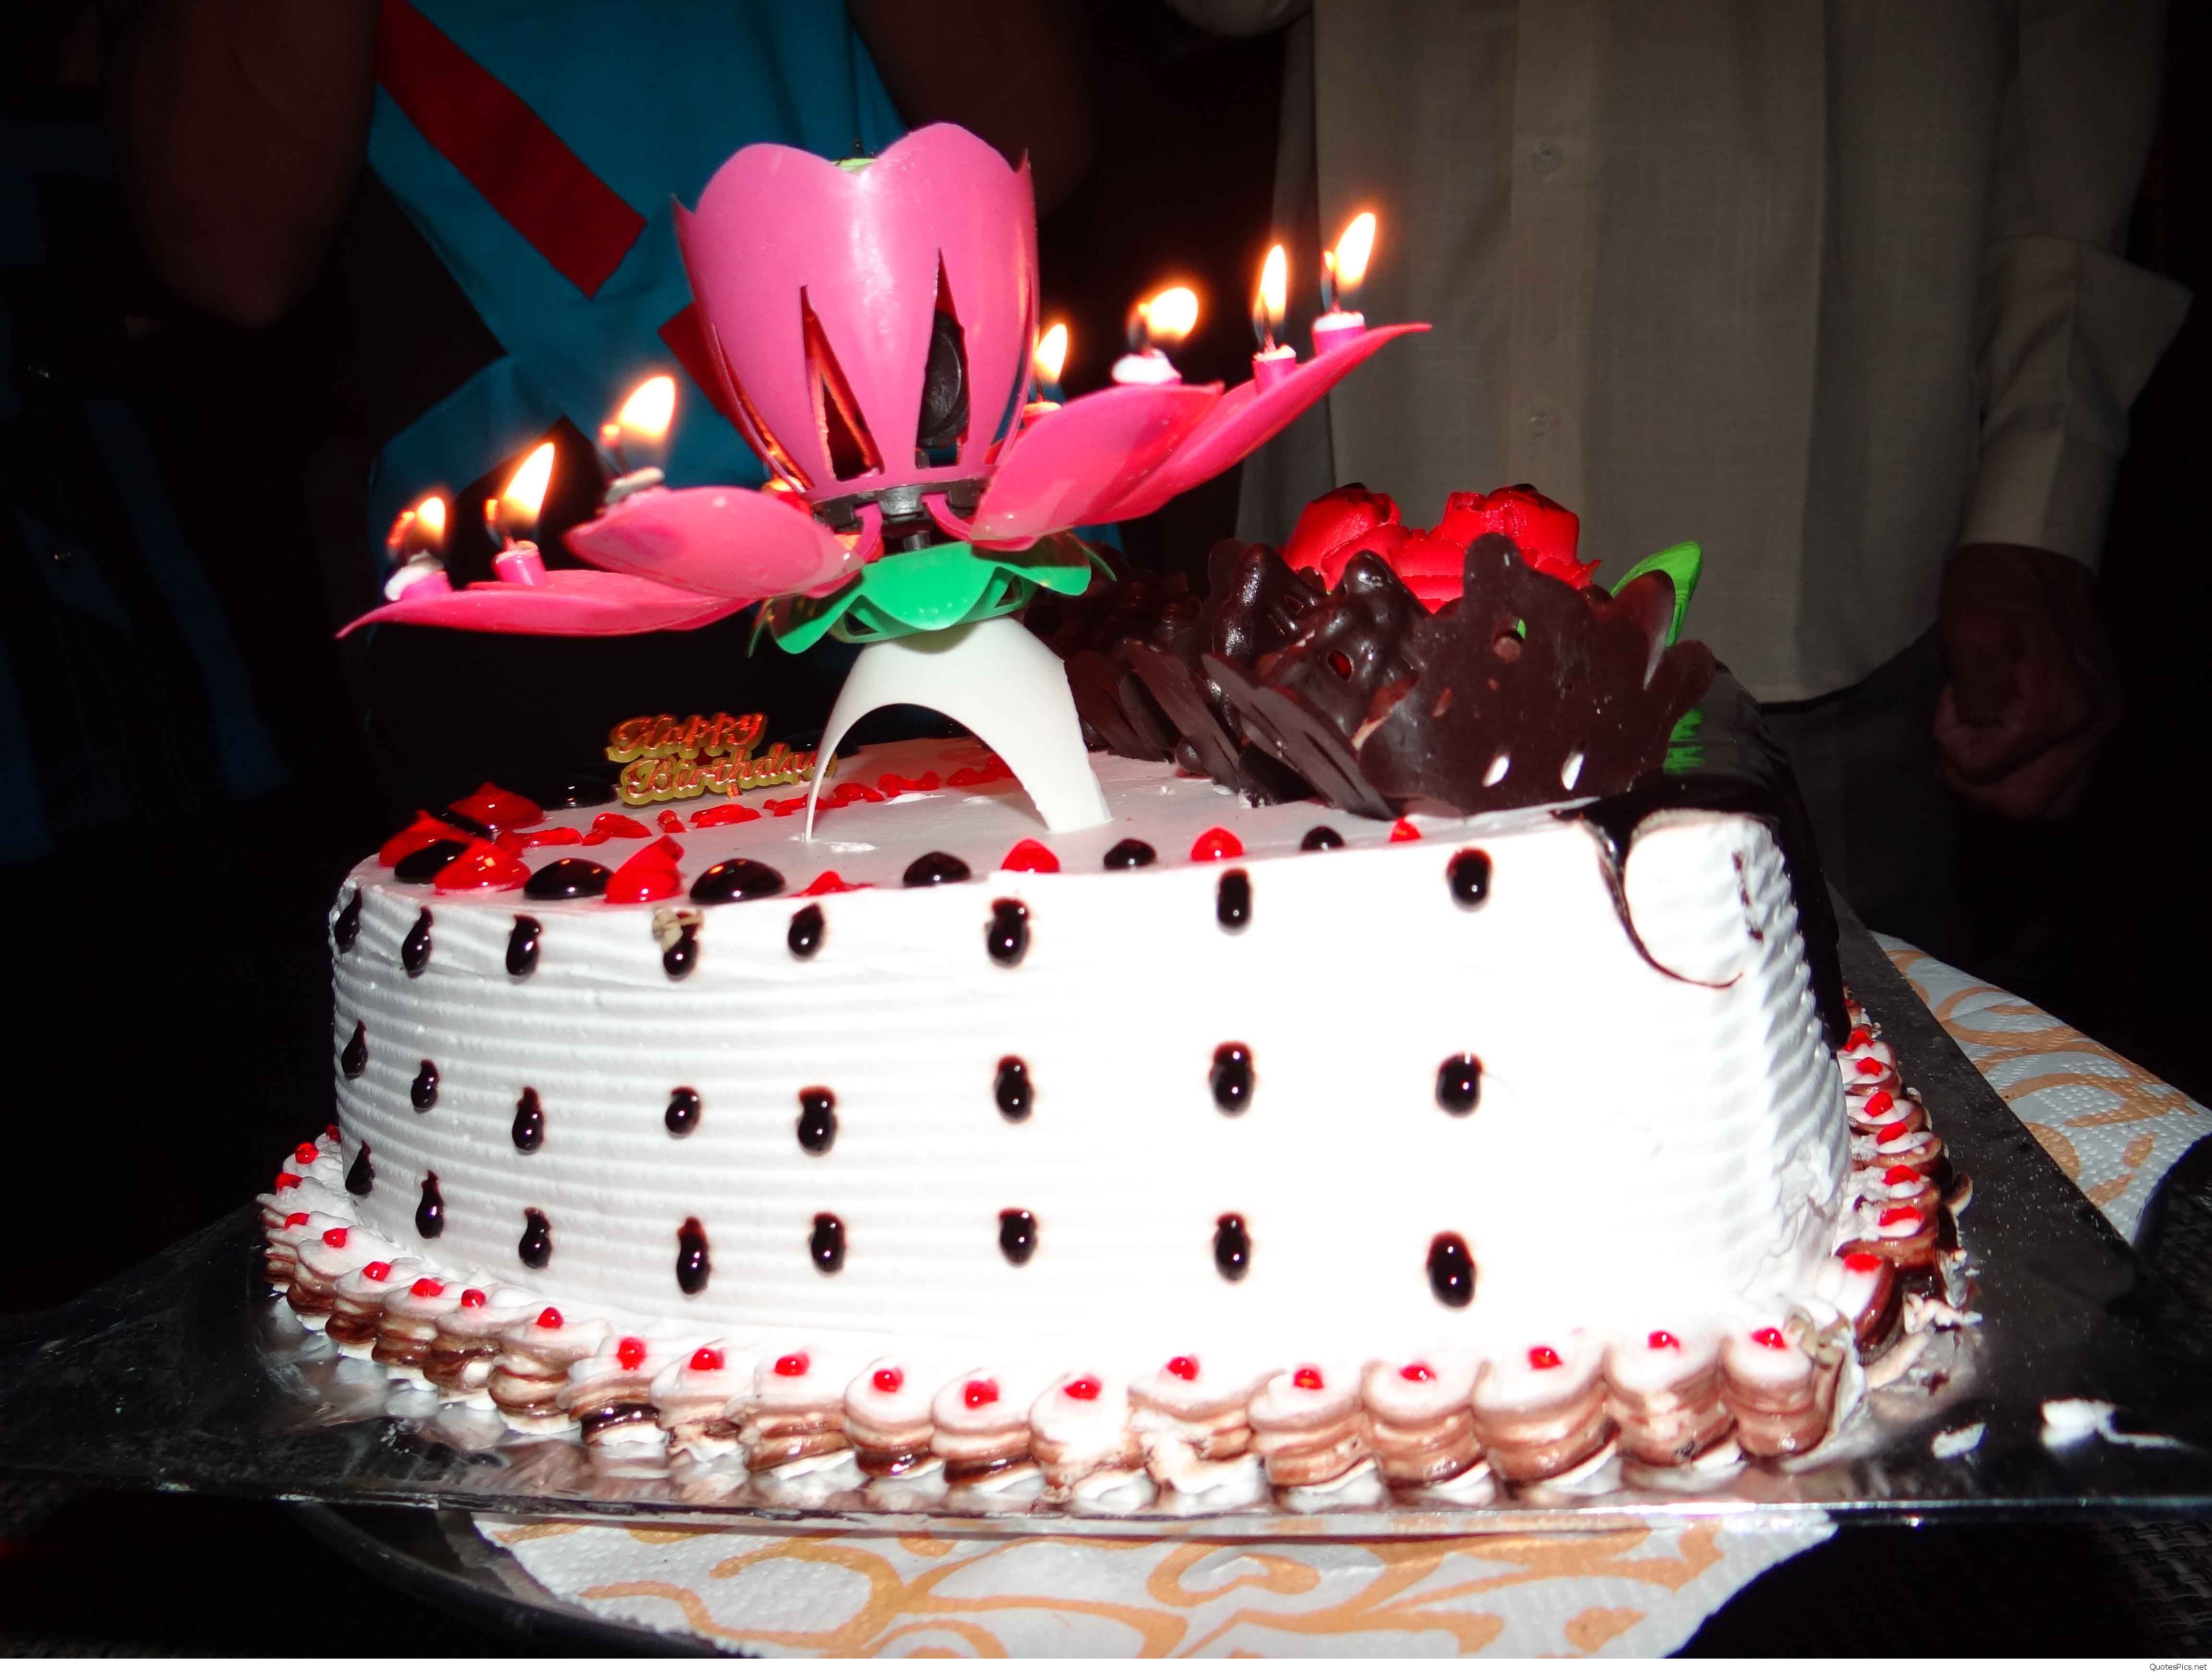 تصویر کیک تولد شیک با شمع بازشو صورتی با کیفیت عالی